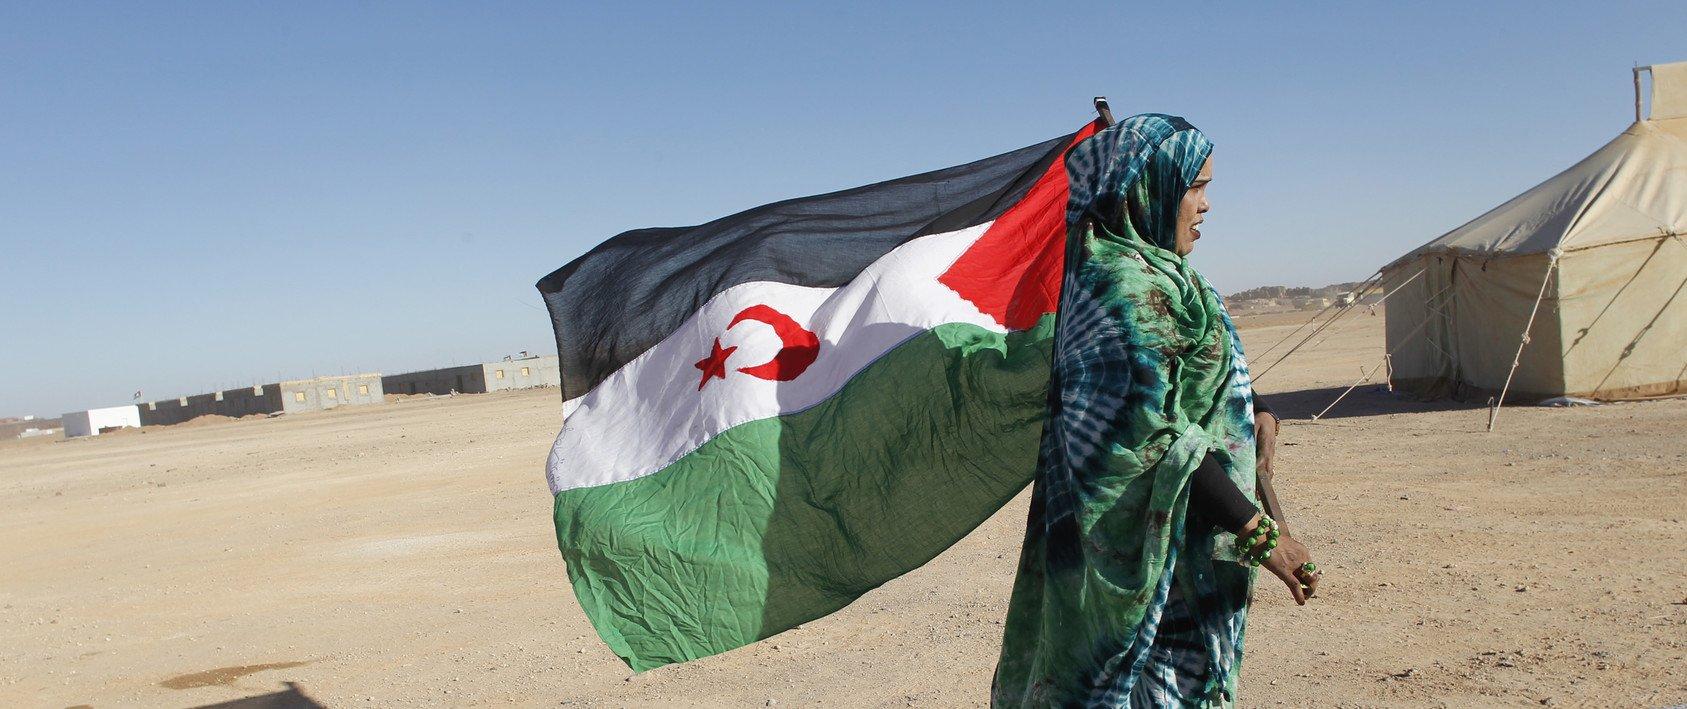 فرنسا: دعوى قضائية لمنع استيراد المنتجات الفلاحية المنهوبة من الصحراء الغربية